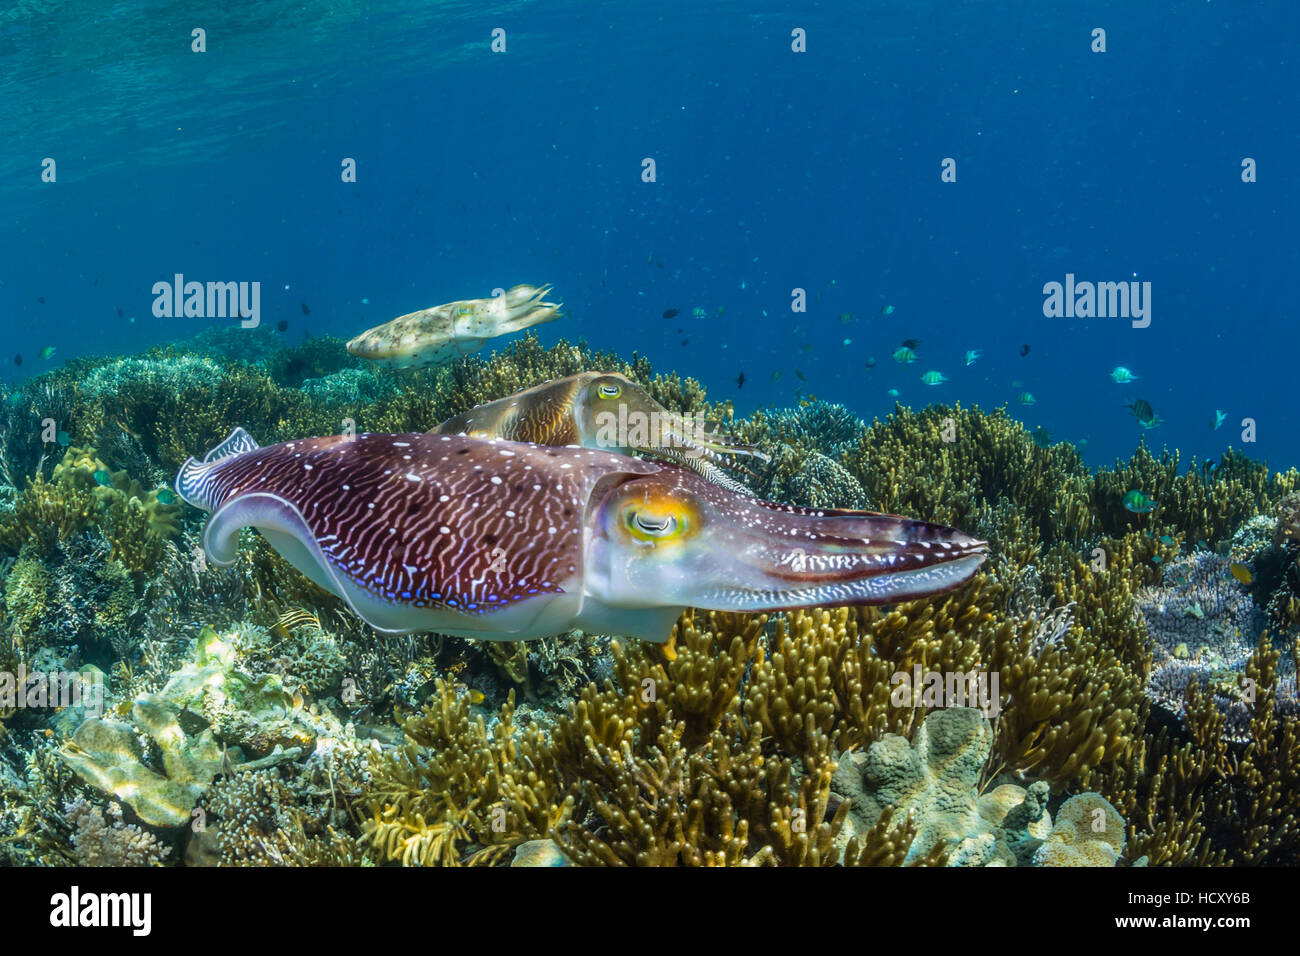 Adult Broadclub Tintenfisch (Sepia finden) Balz, Sebayur Insel, Meer Flores, Indonesien Stockfoto